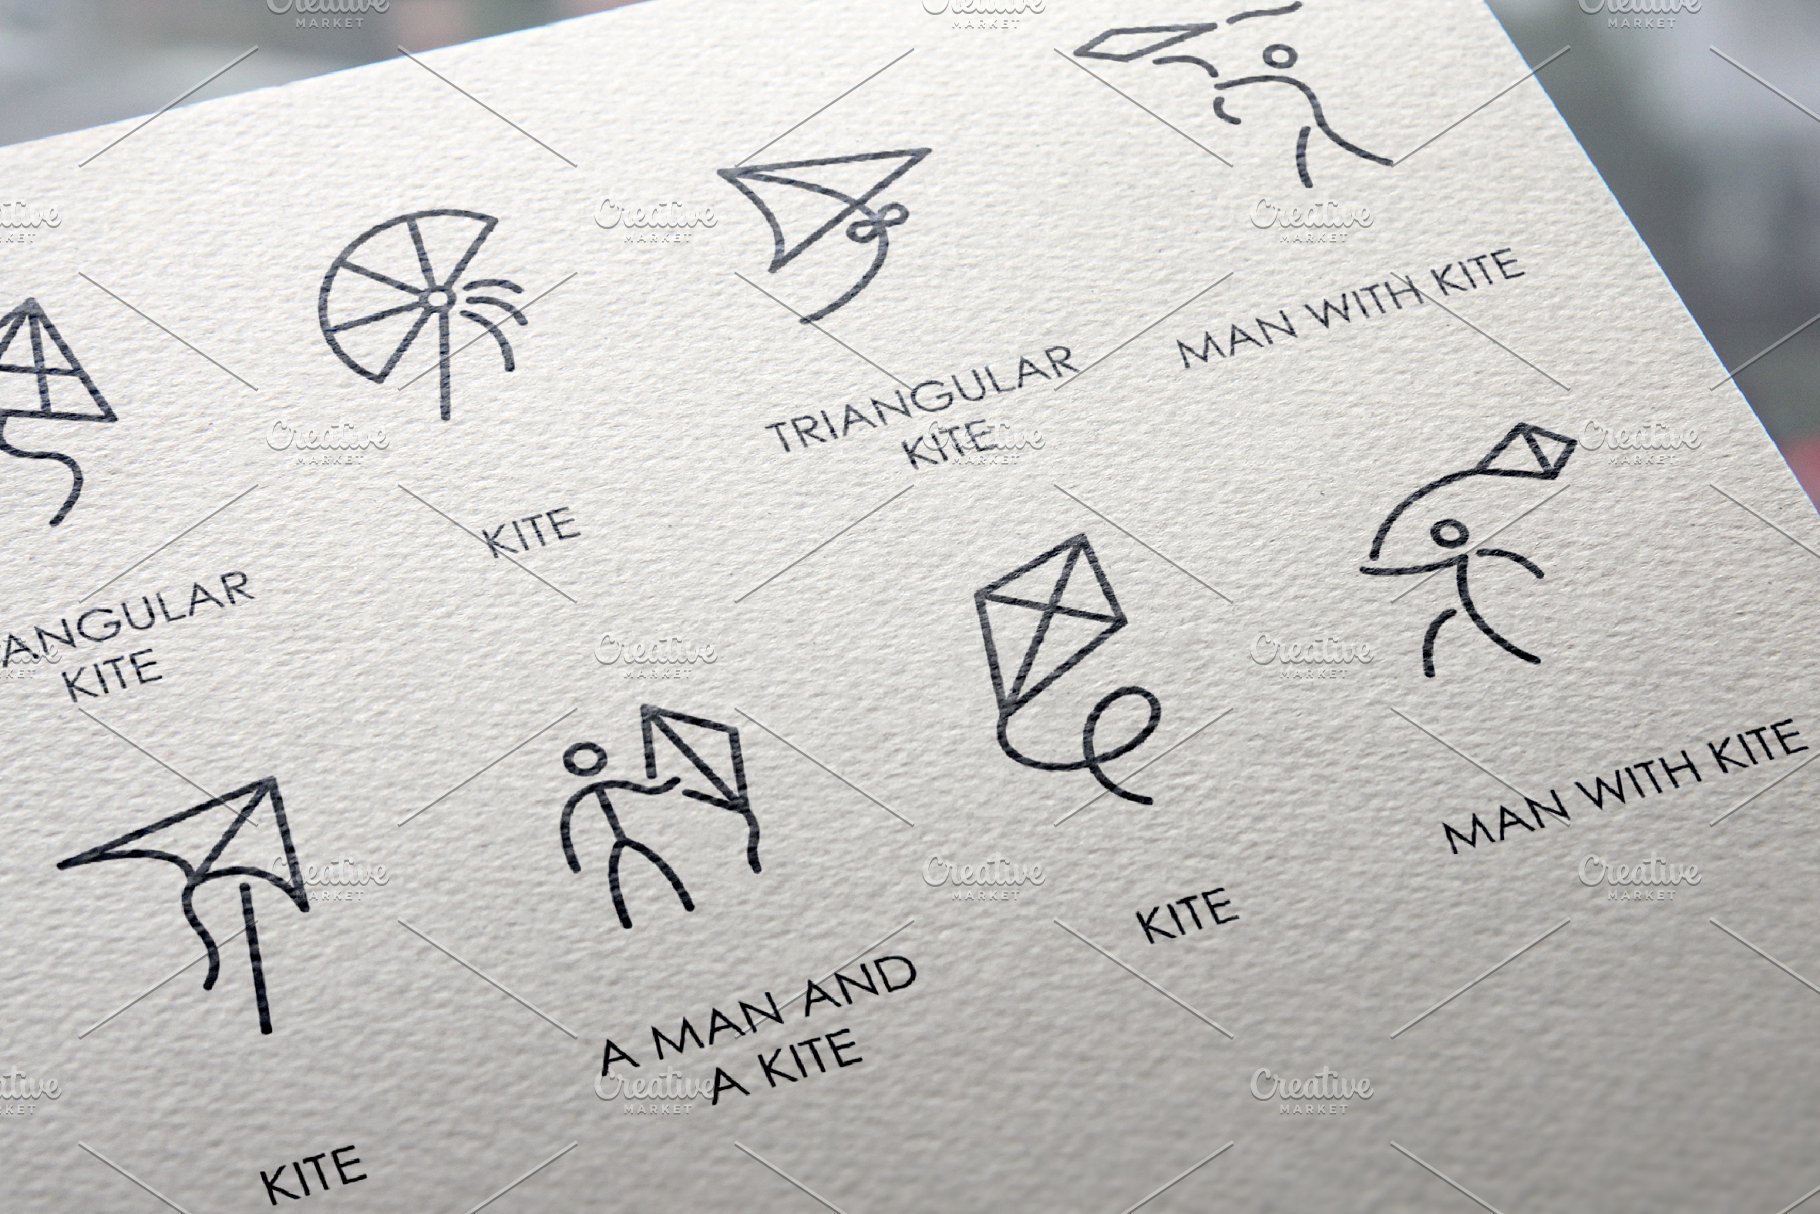 中国风筝元素图标大全 Kite thinline icons